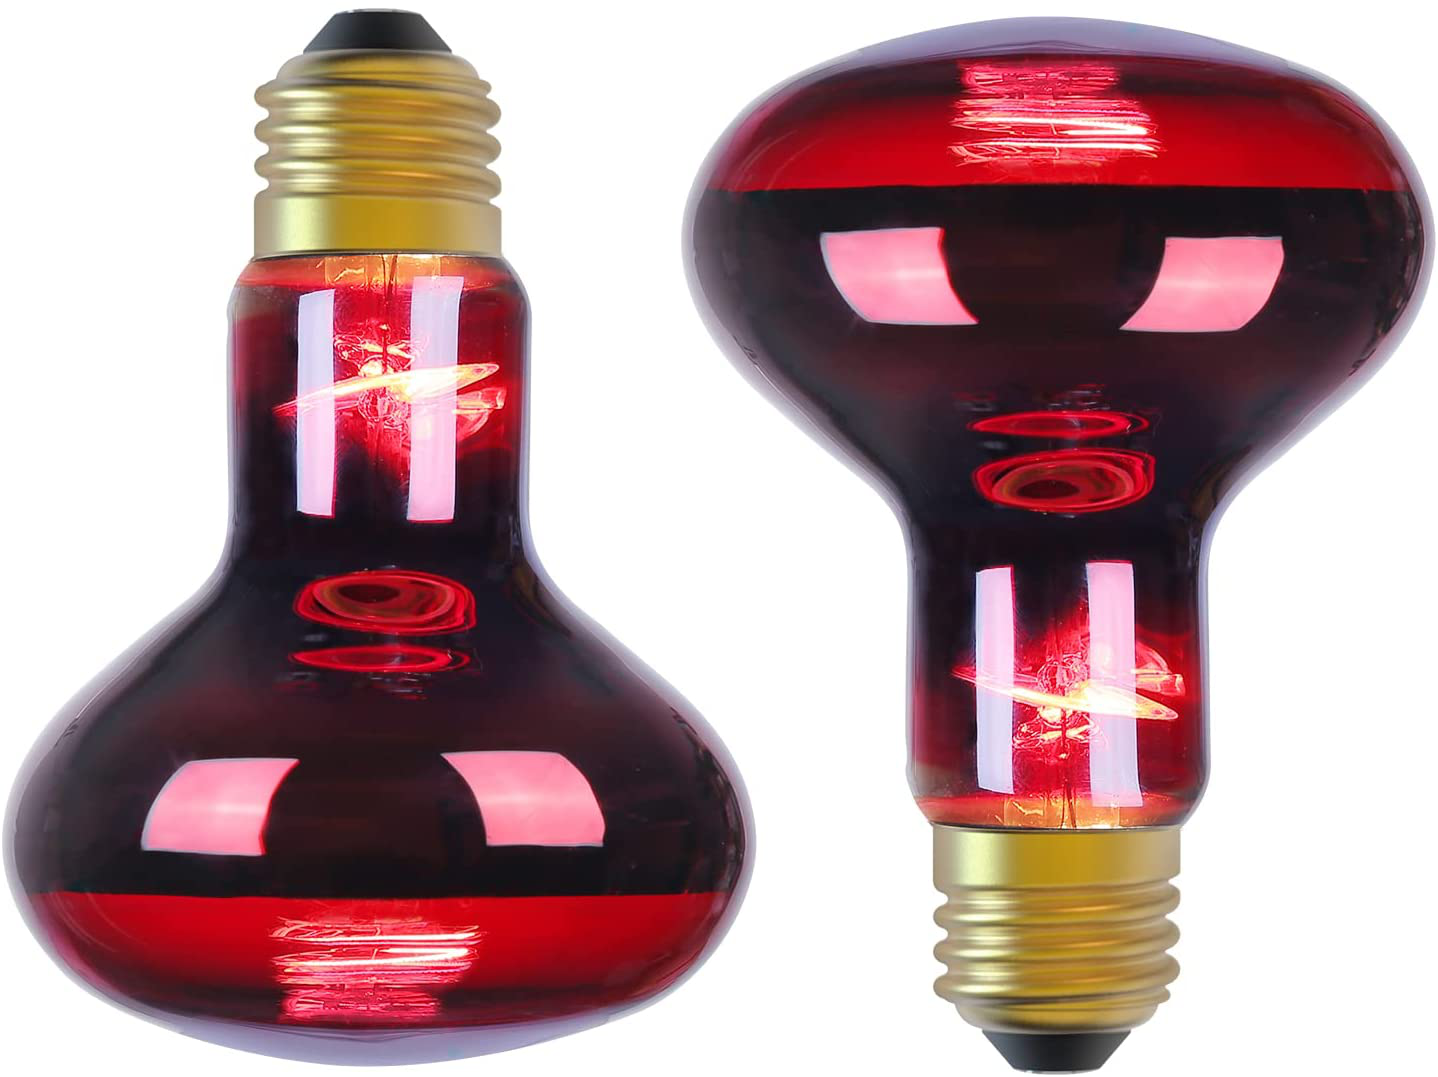 Infrared Heat Lamp Basking Spot Light Bulb，Ledesign 75 Watt White Heat Lamp Bulbs for Reptiles and Amphibian Use, 2 Packs (White)